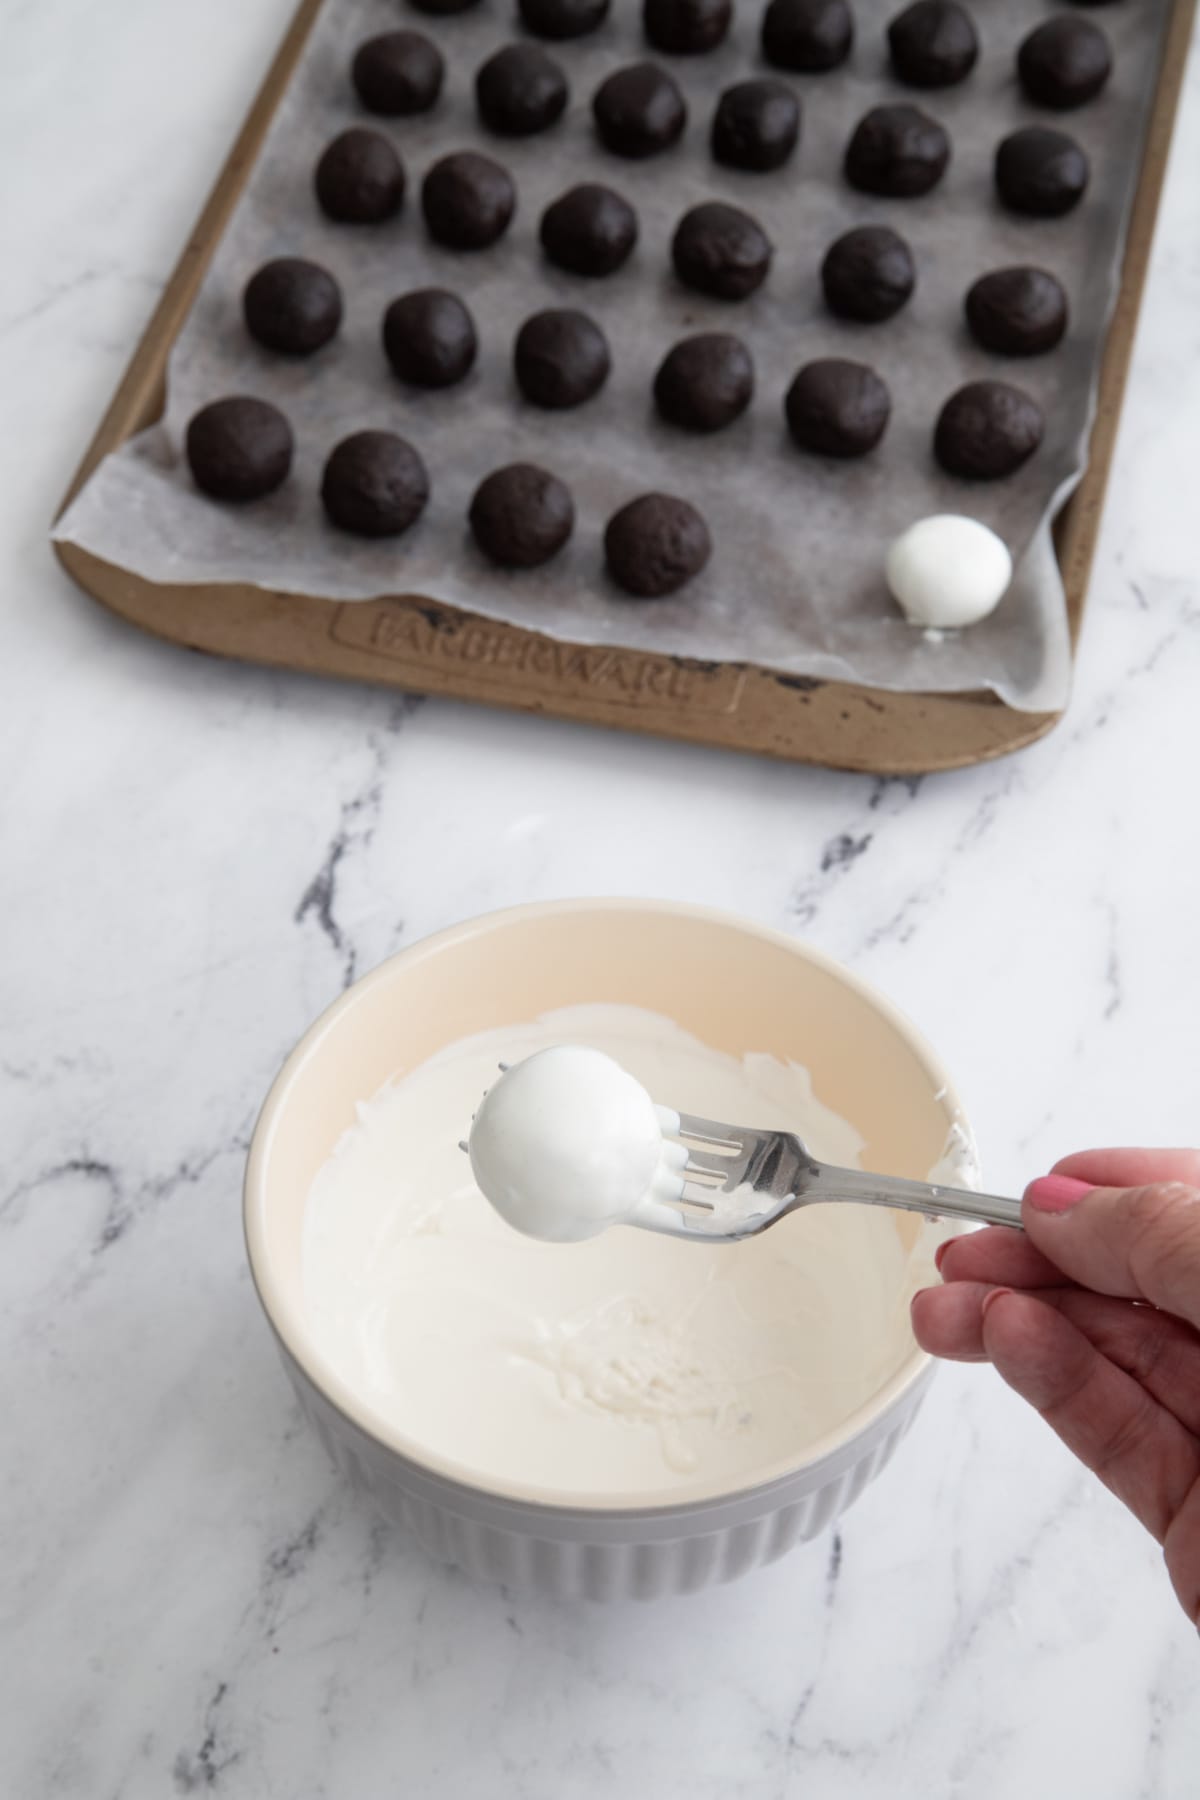 White chocolate covered Oreo balls